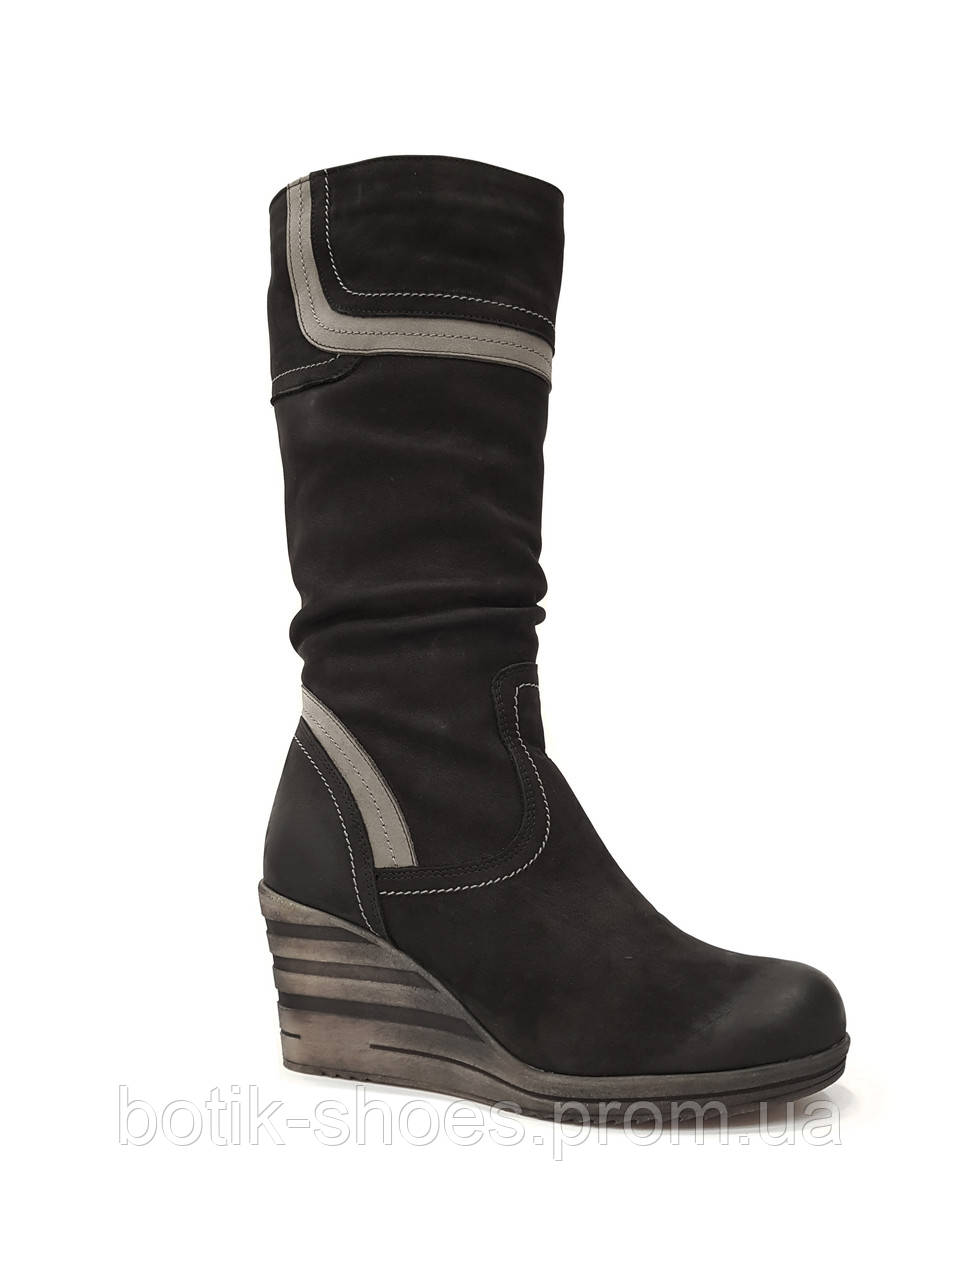 Зимові чоботи жіночі шкіра на танкетці зиму з хутром теплі повсякденні польща утеплені зручні комфорт чорні 40 розмір Tanex 061